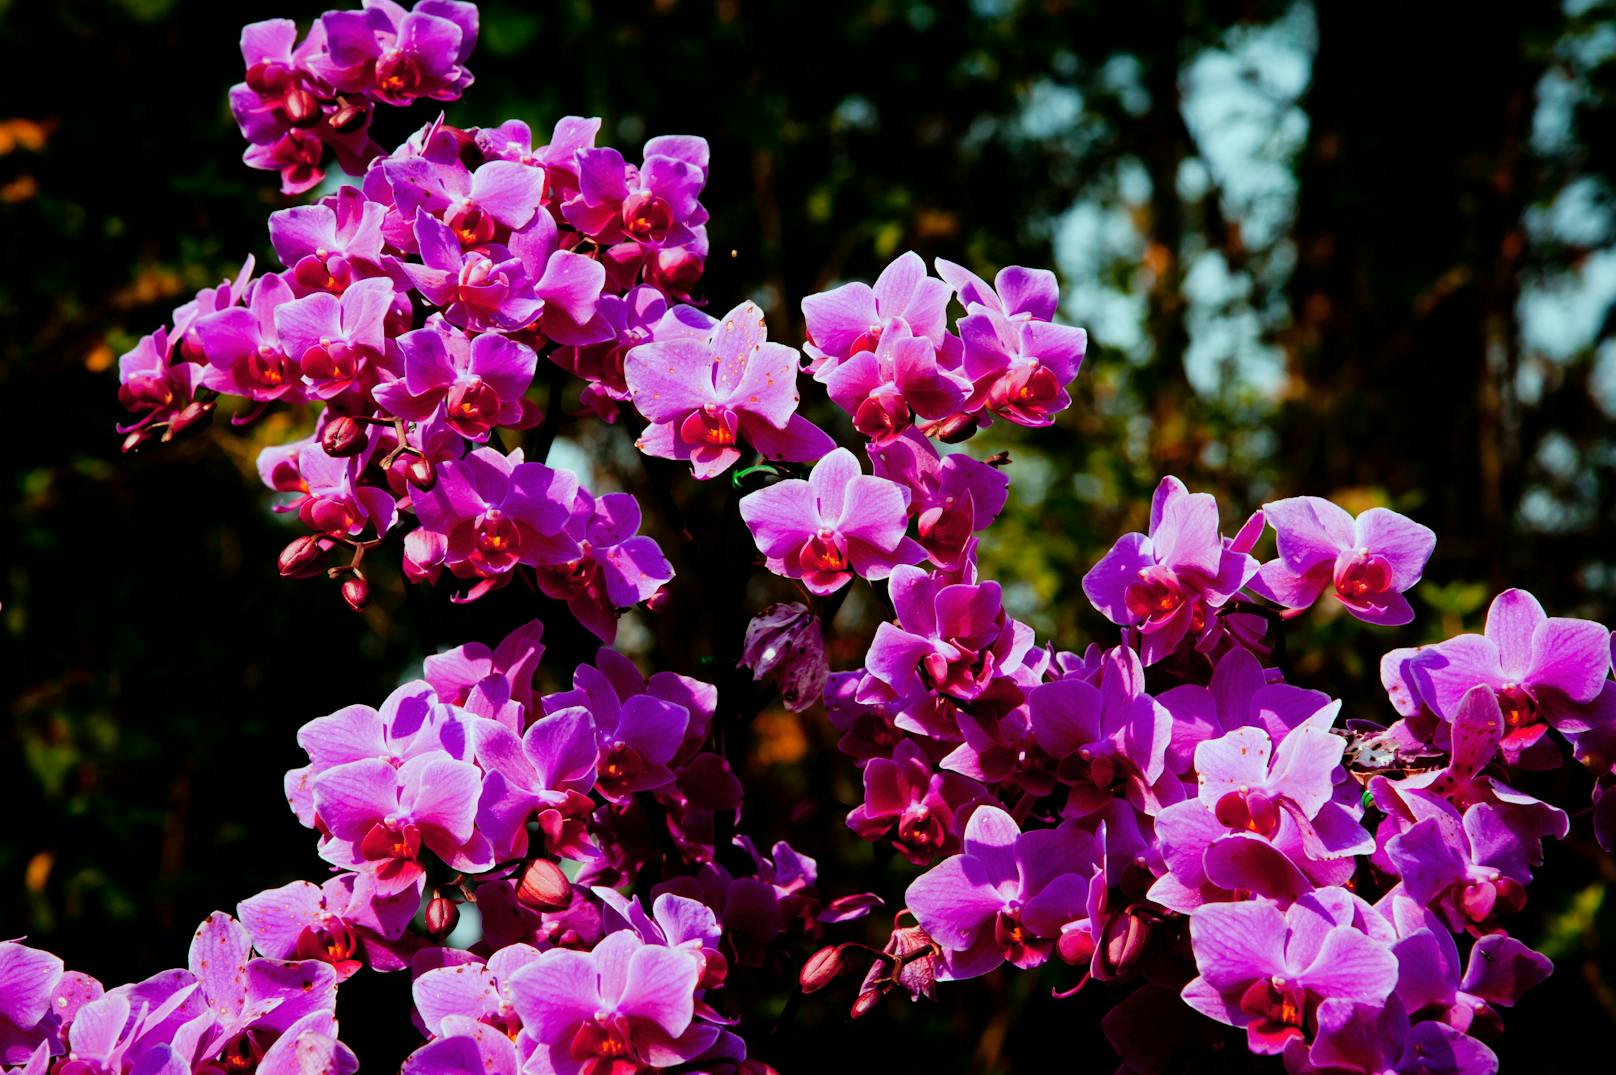 Aus Nicht-EU-Ländern gilt unter anderem ein Importverbot für&nbsp;Orchideenbäume (Bauhinia).